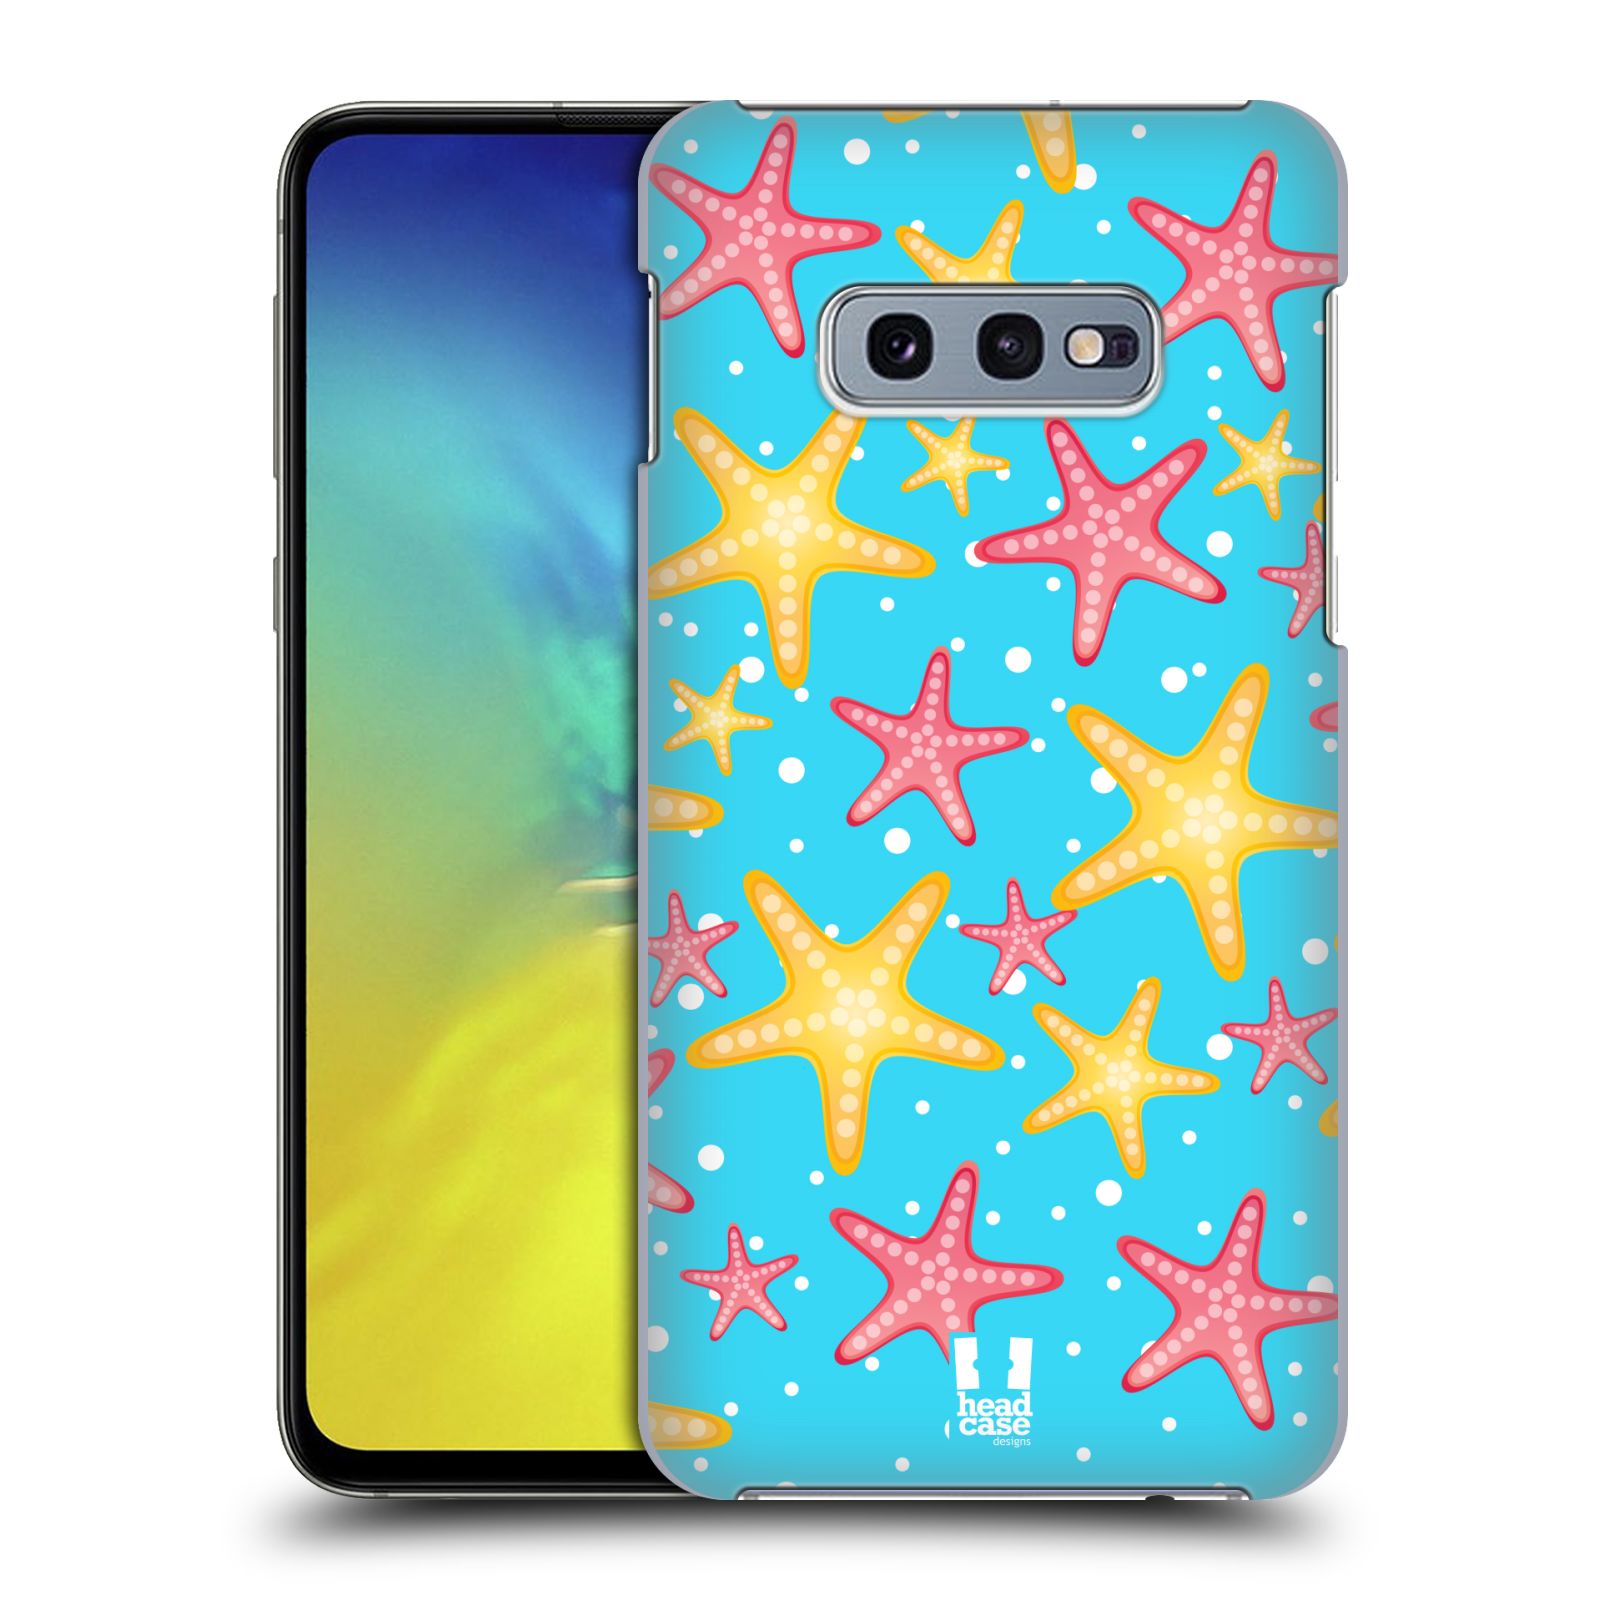 Zadní obal pro mobil Samsung Galaxy S10e - HEAD CASE - kreslený mořský vzor hvězda